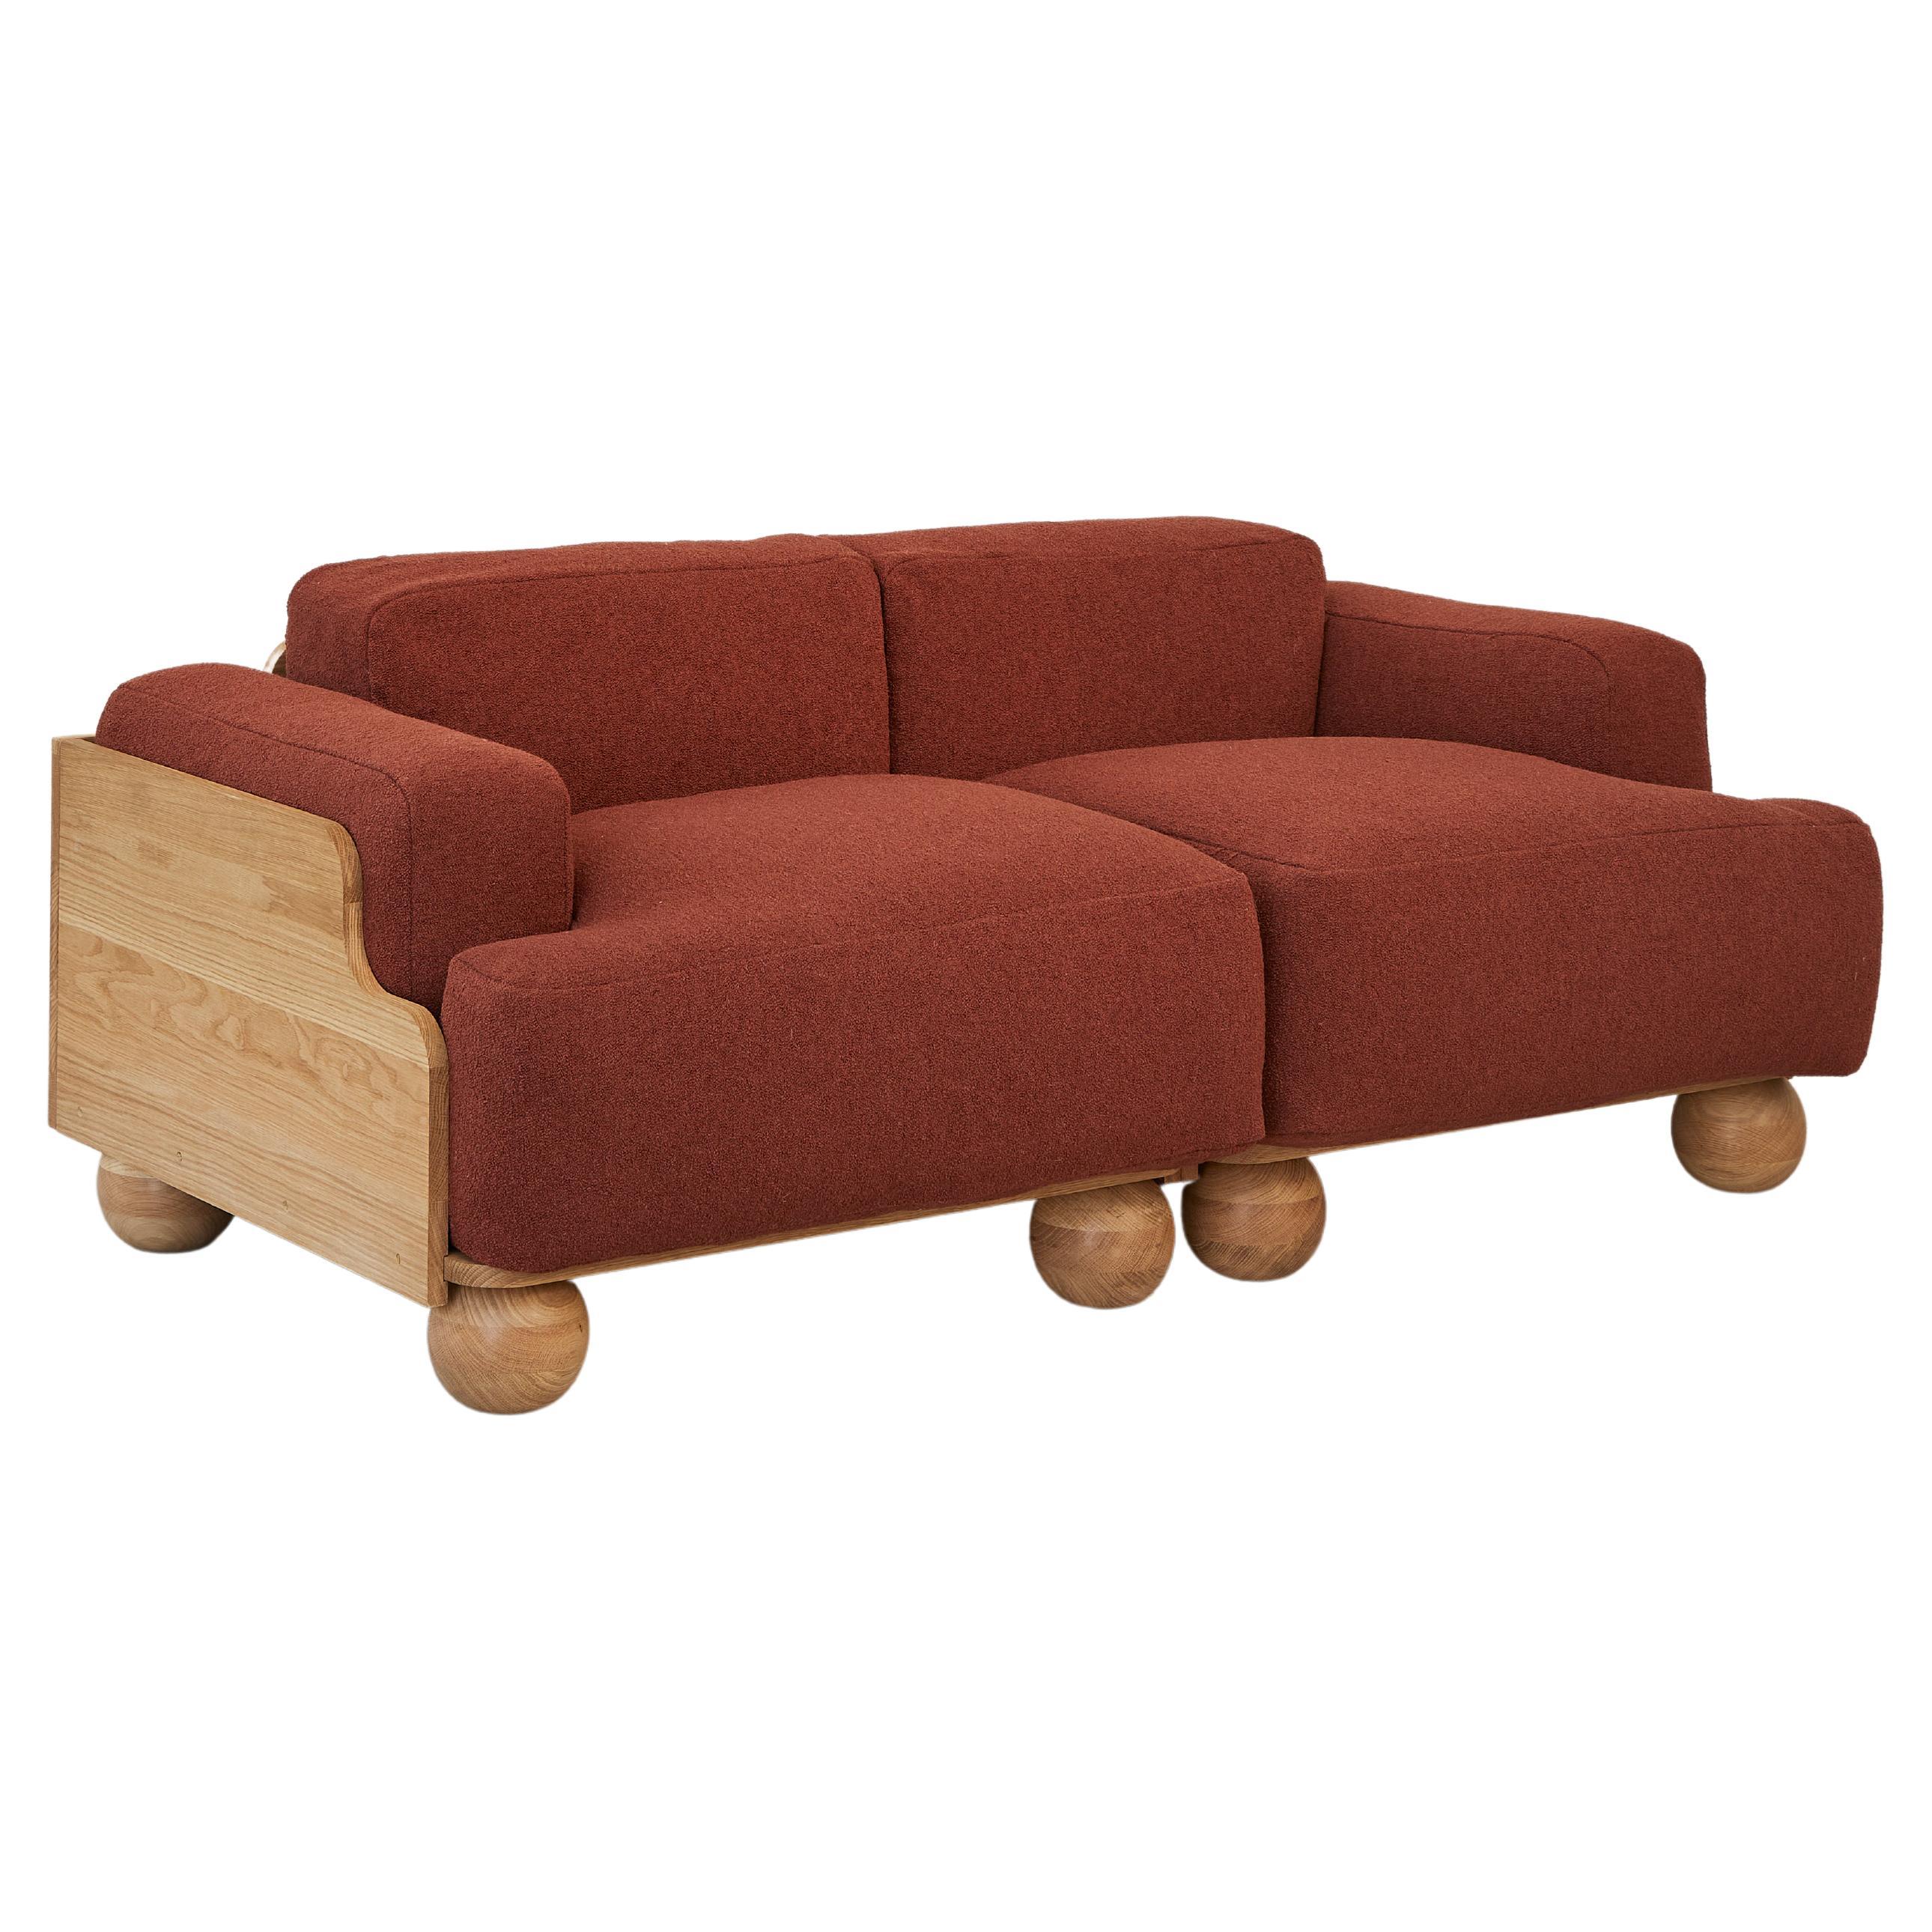 Cove 2.5 Seater Sofa in Terracotta Red